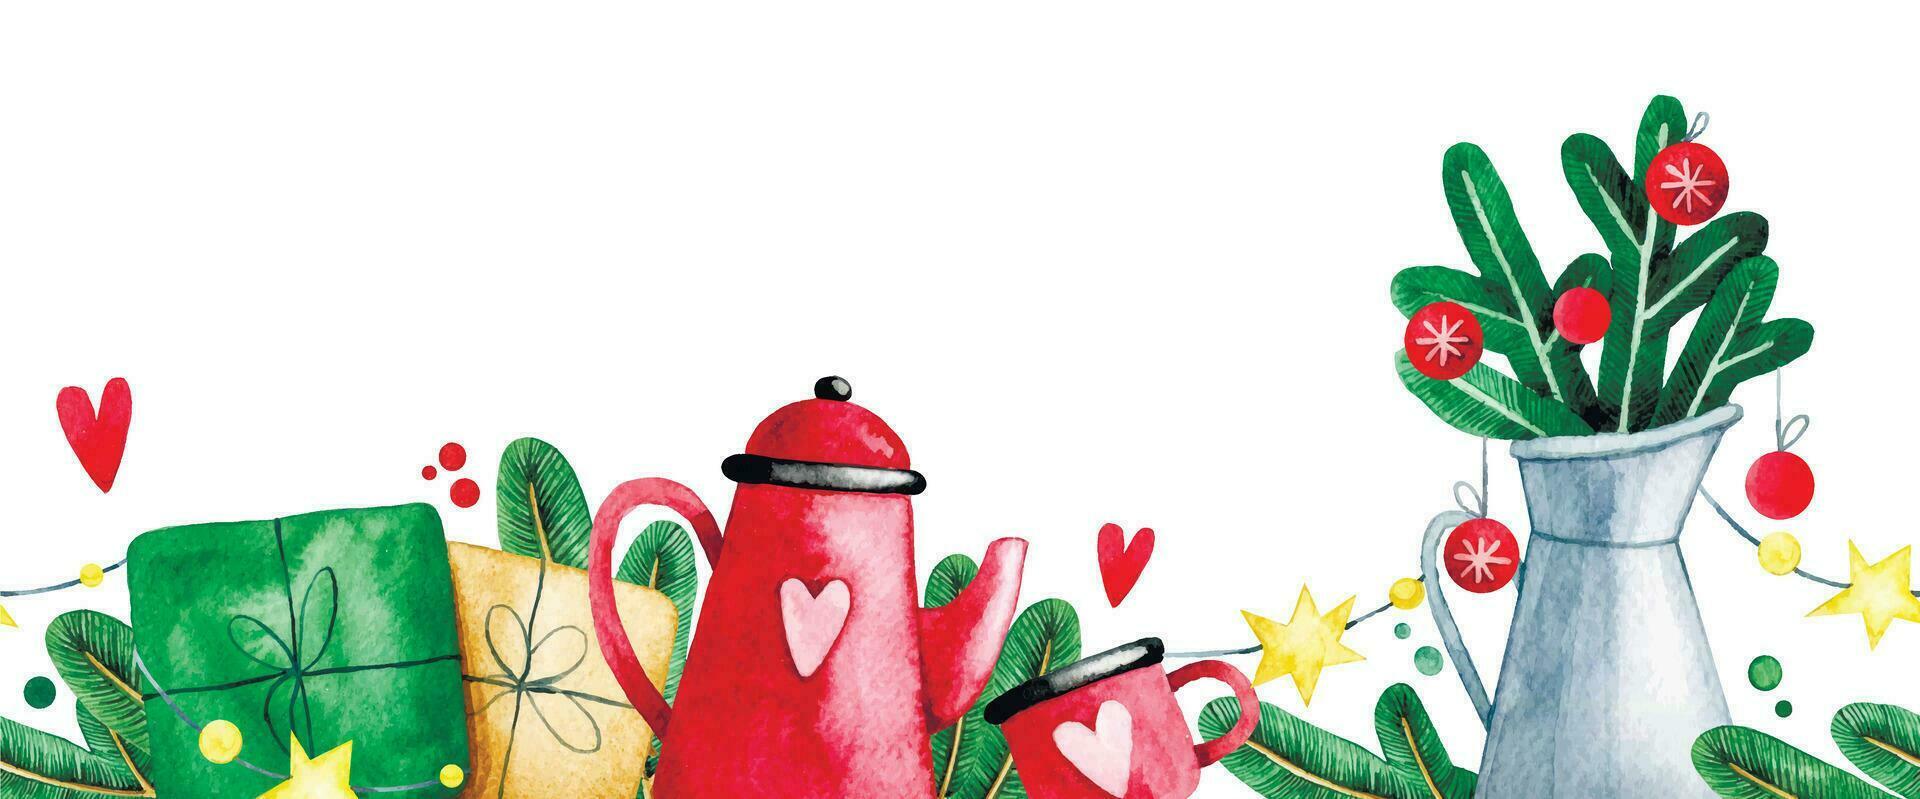 Kerstmis decoratie, naadloos waterverf grens, kader. Kerstmis boom takken, cadeaus en een rood theepot. feestelijk samenstelling voor de nieuw jaar. vector